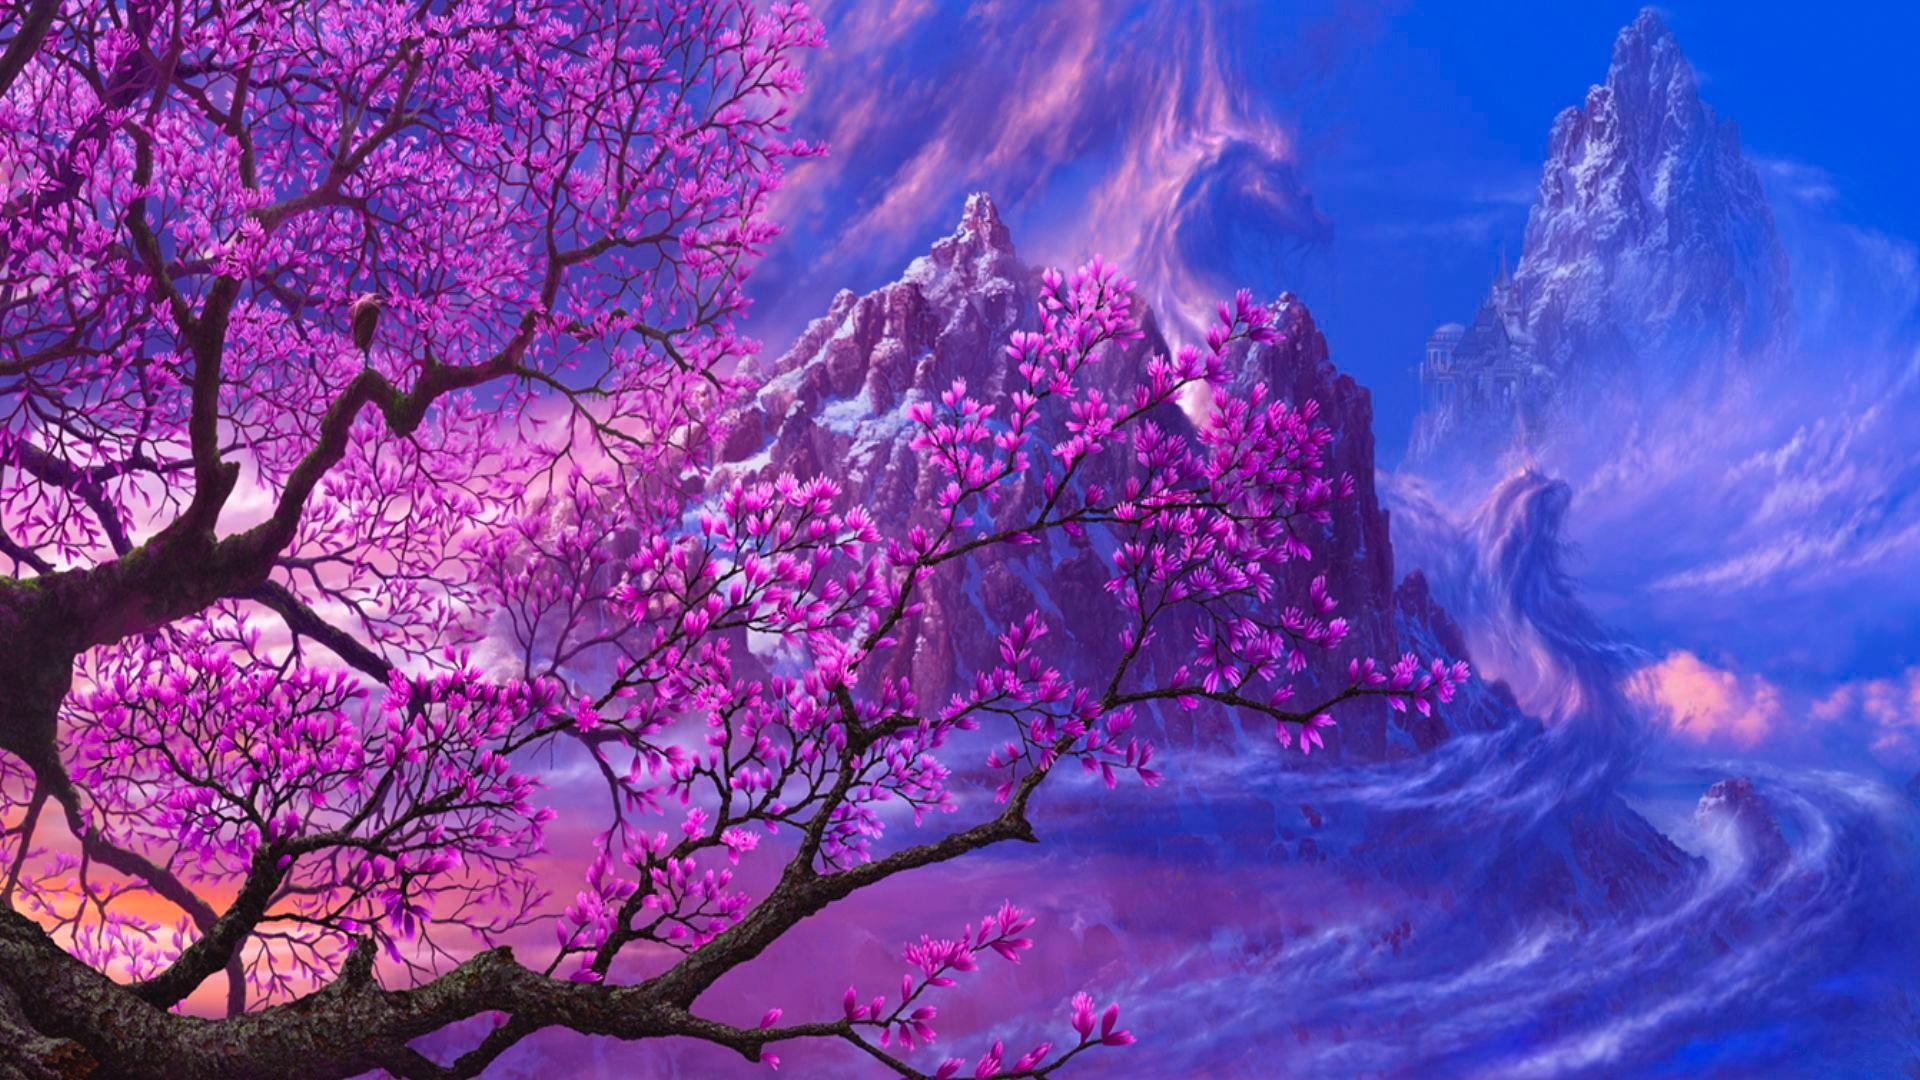 Sakura wallpaperDownload free stunning wallpaper for desktop